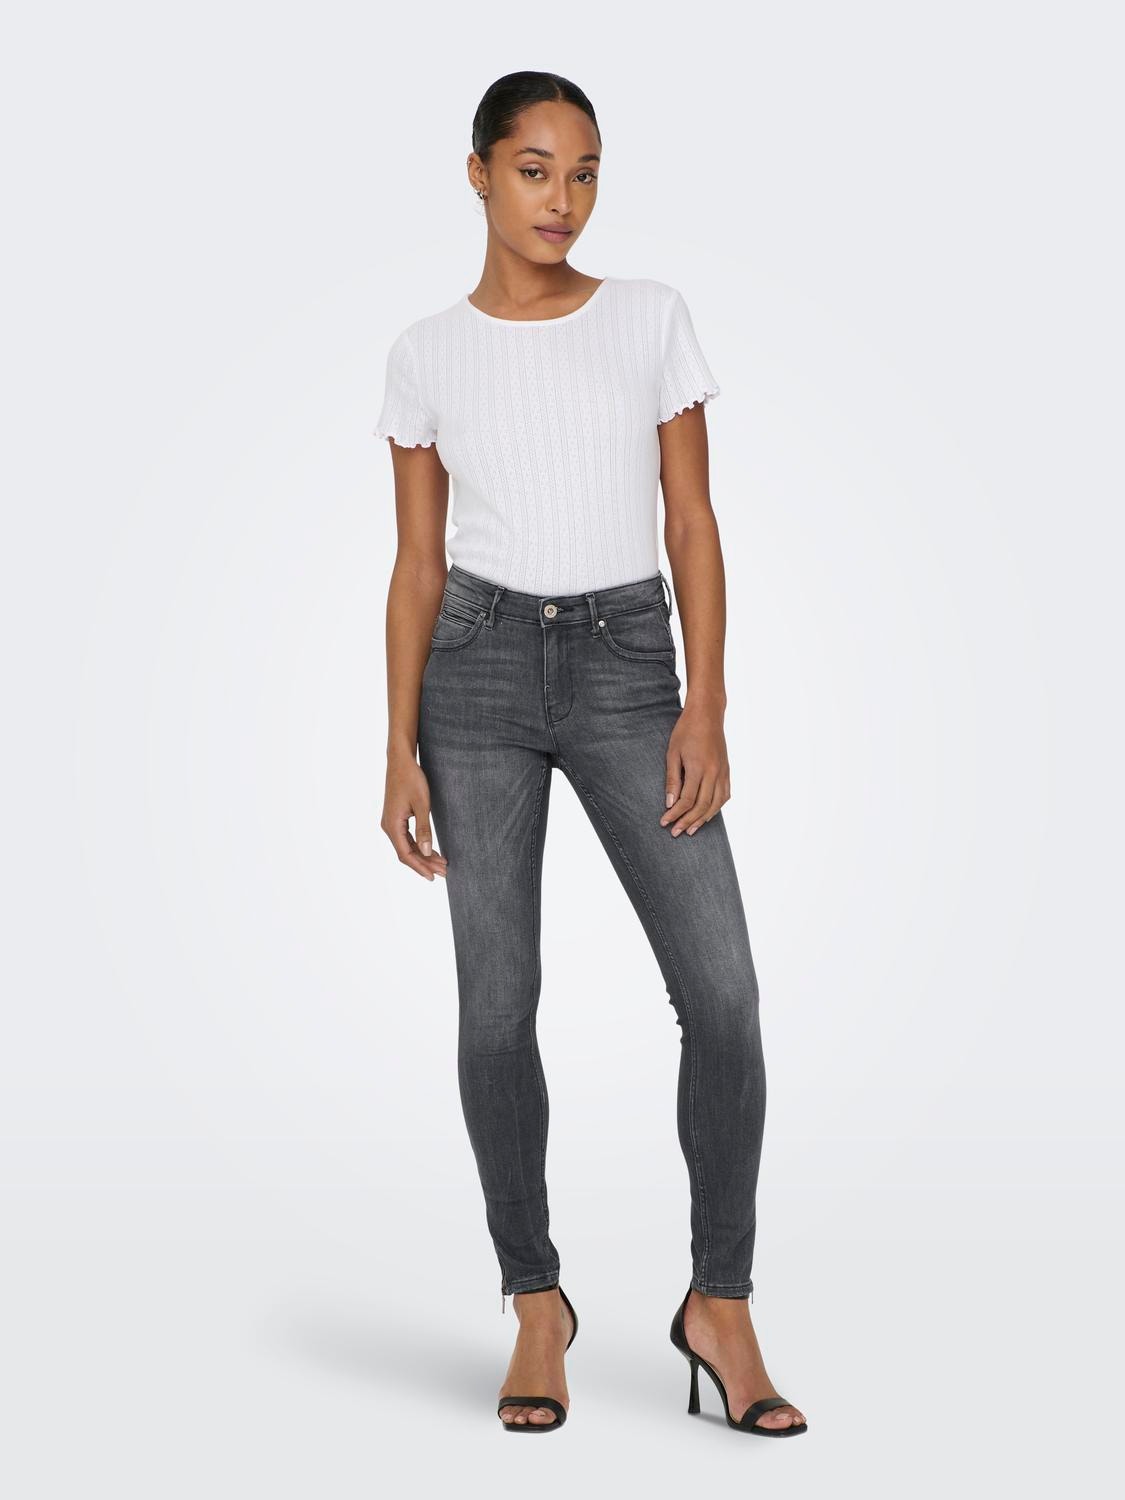 ONLY ONLKENDELL REGULAR Waist SKINNY ANKLE Jeans -Medium Grey Denim - 15209387